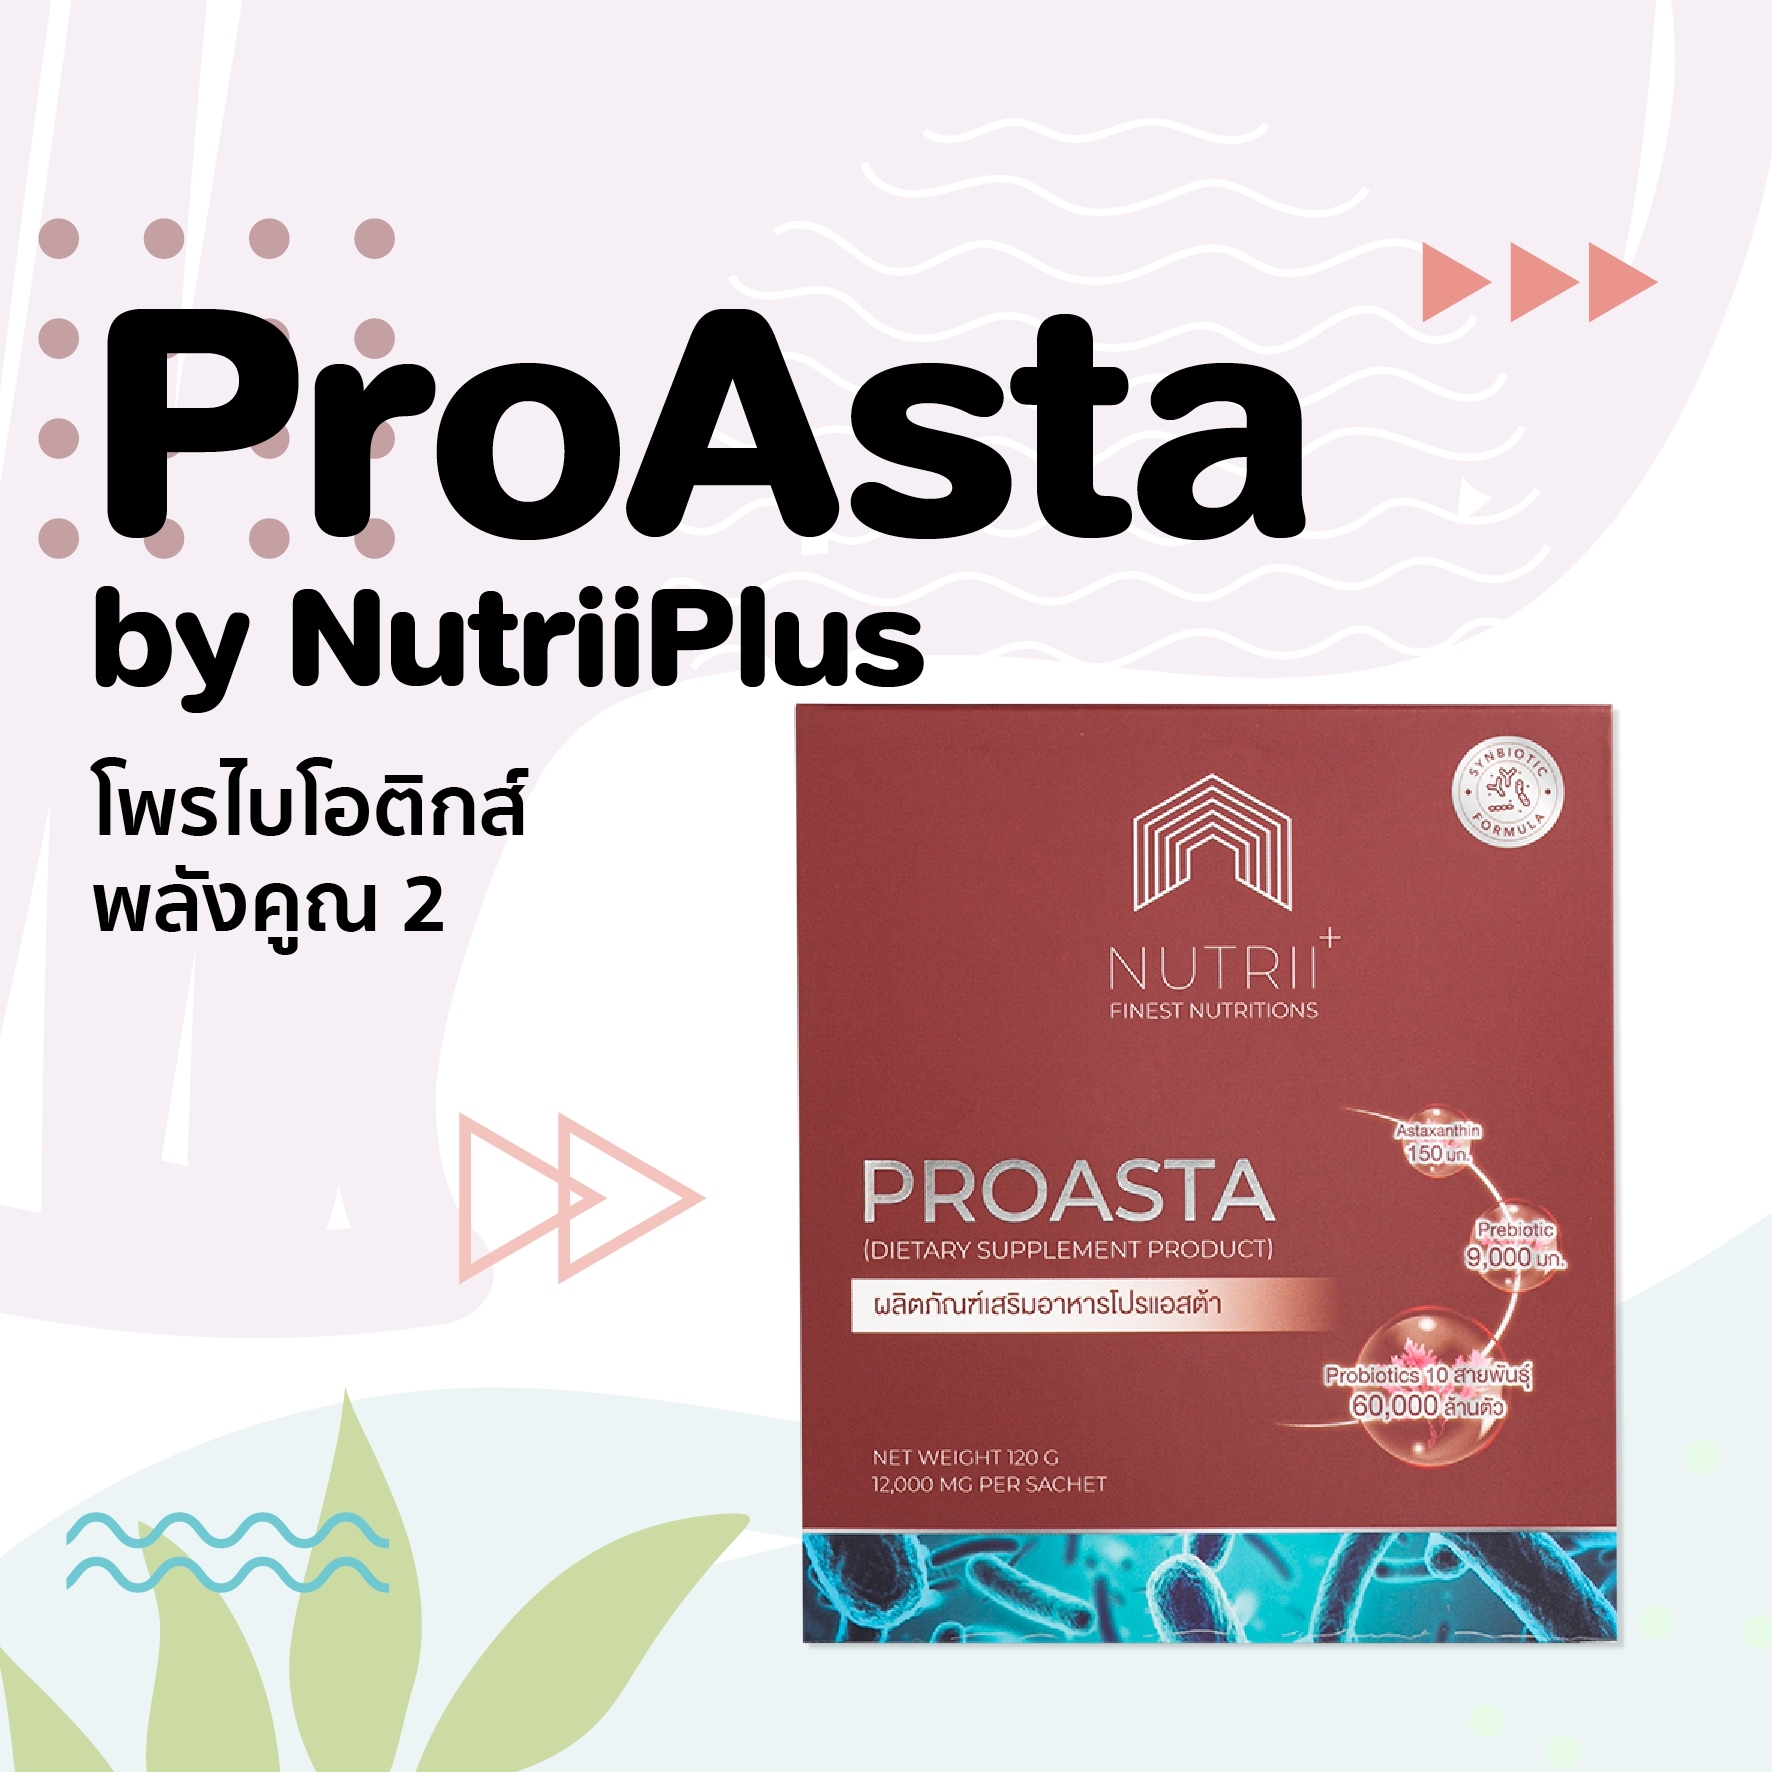 ProAsta by NutriiPlus